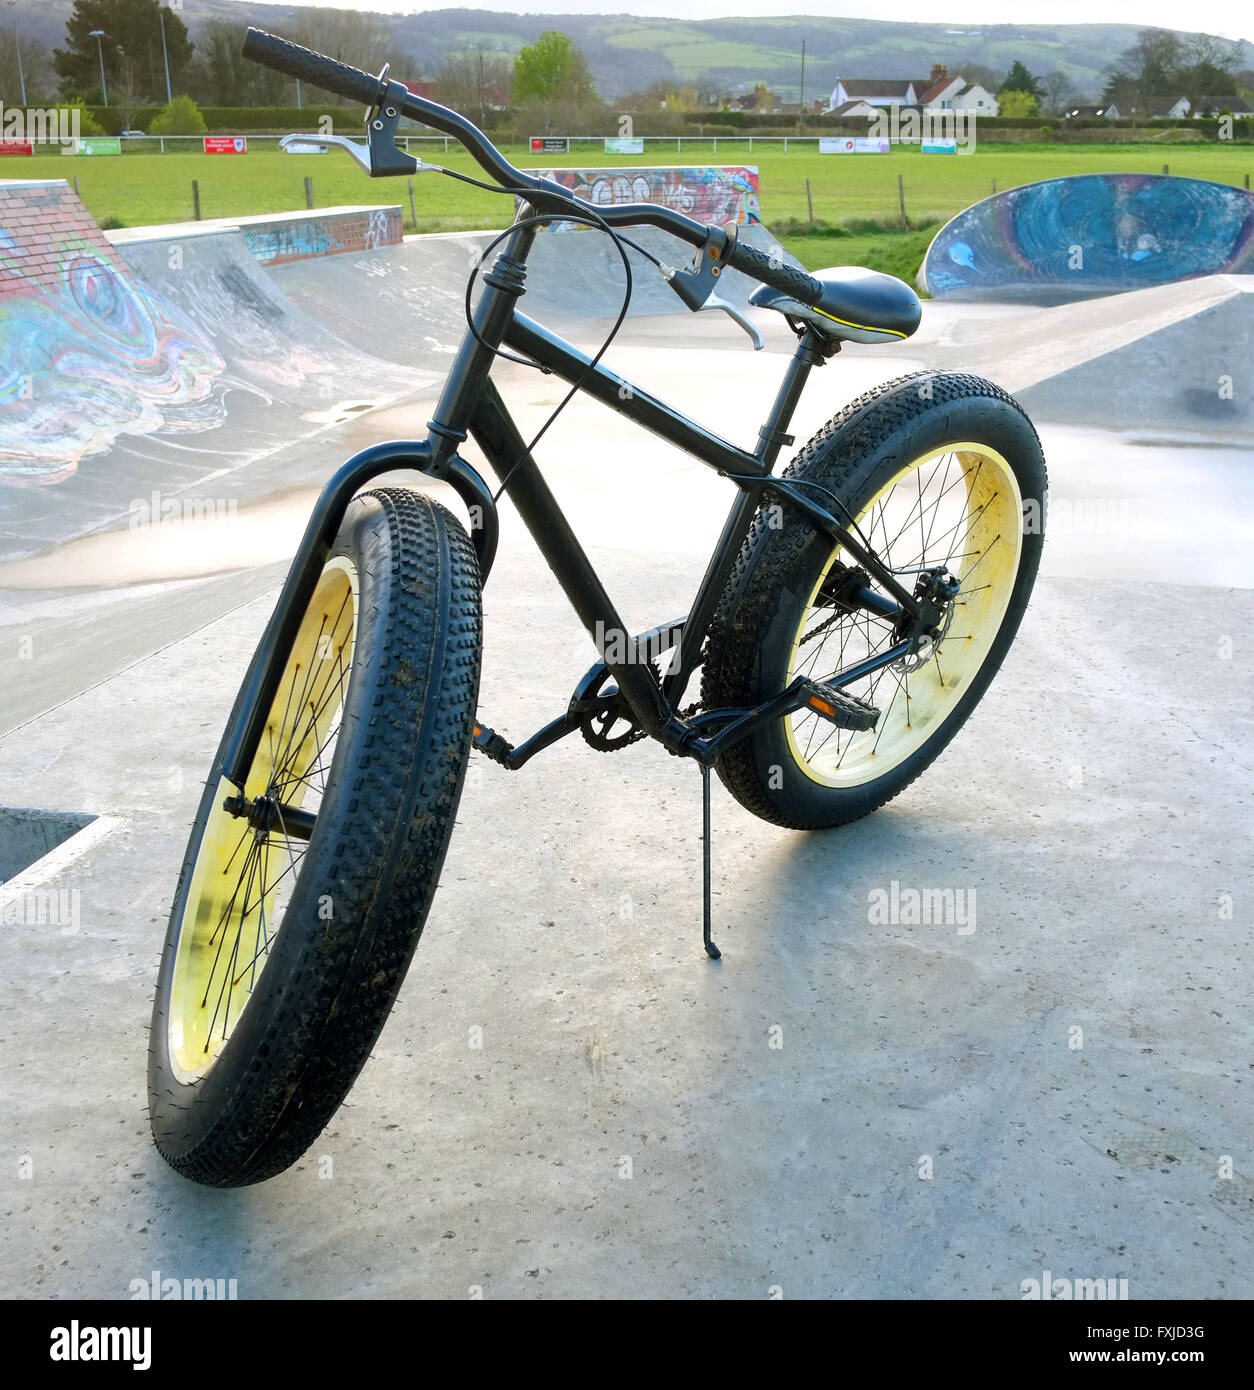 Gros pneu de vélo Banque de photographies et d'images à haute résolution -  Alamy